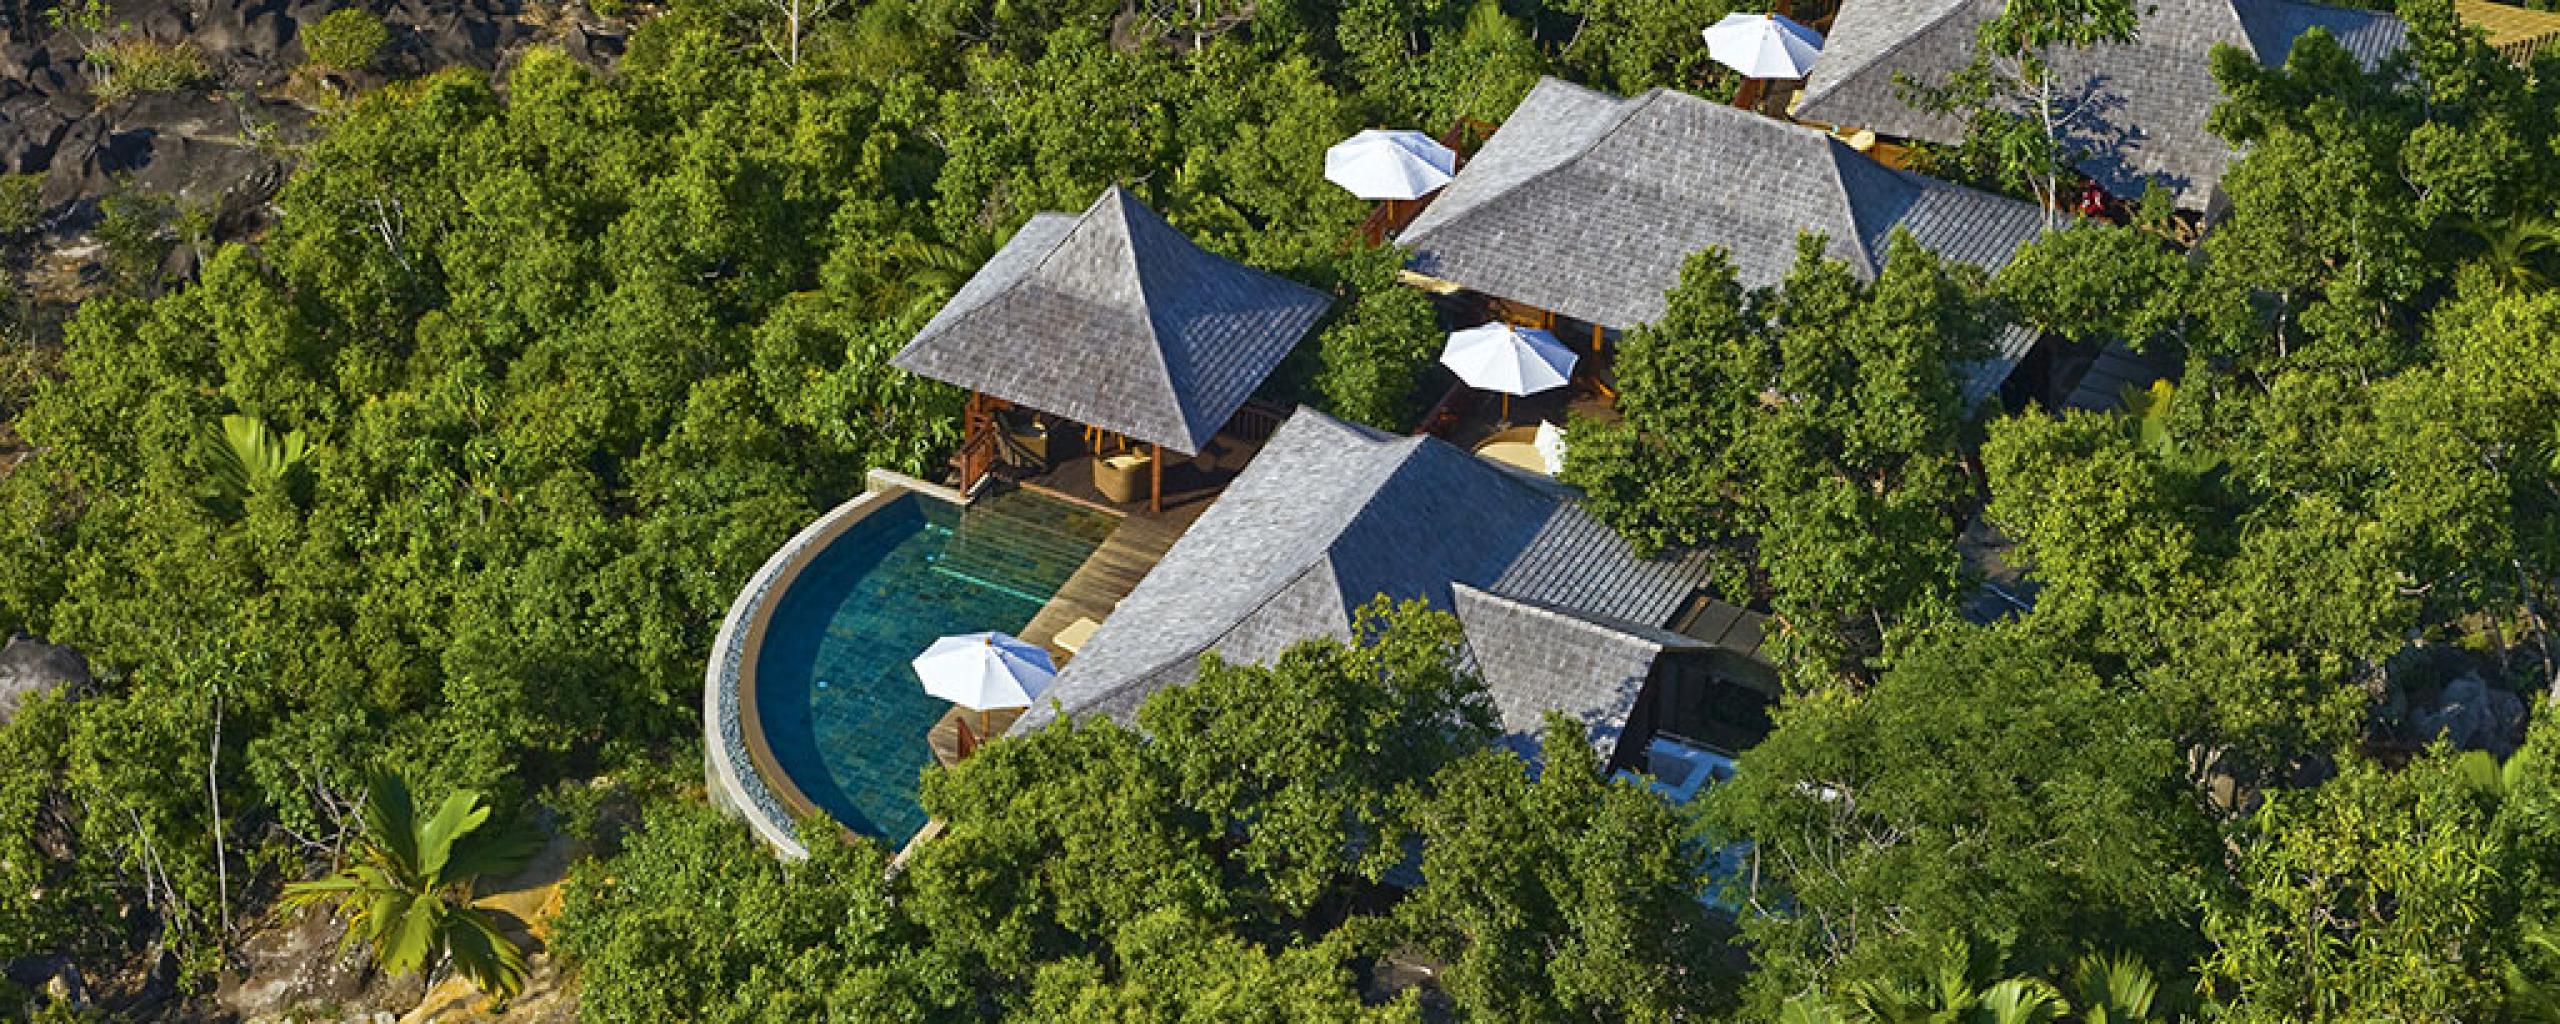 Constance Ephélia Resort - Malé